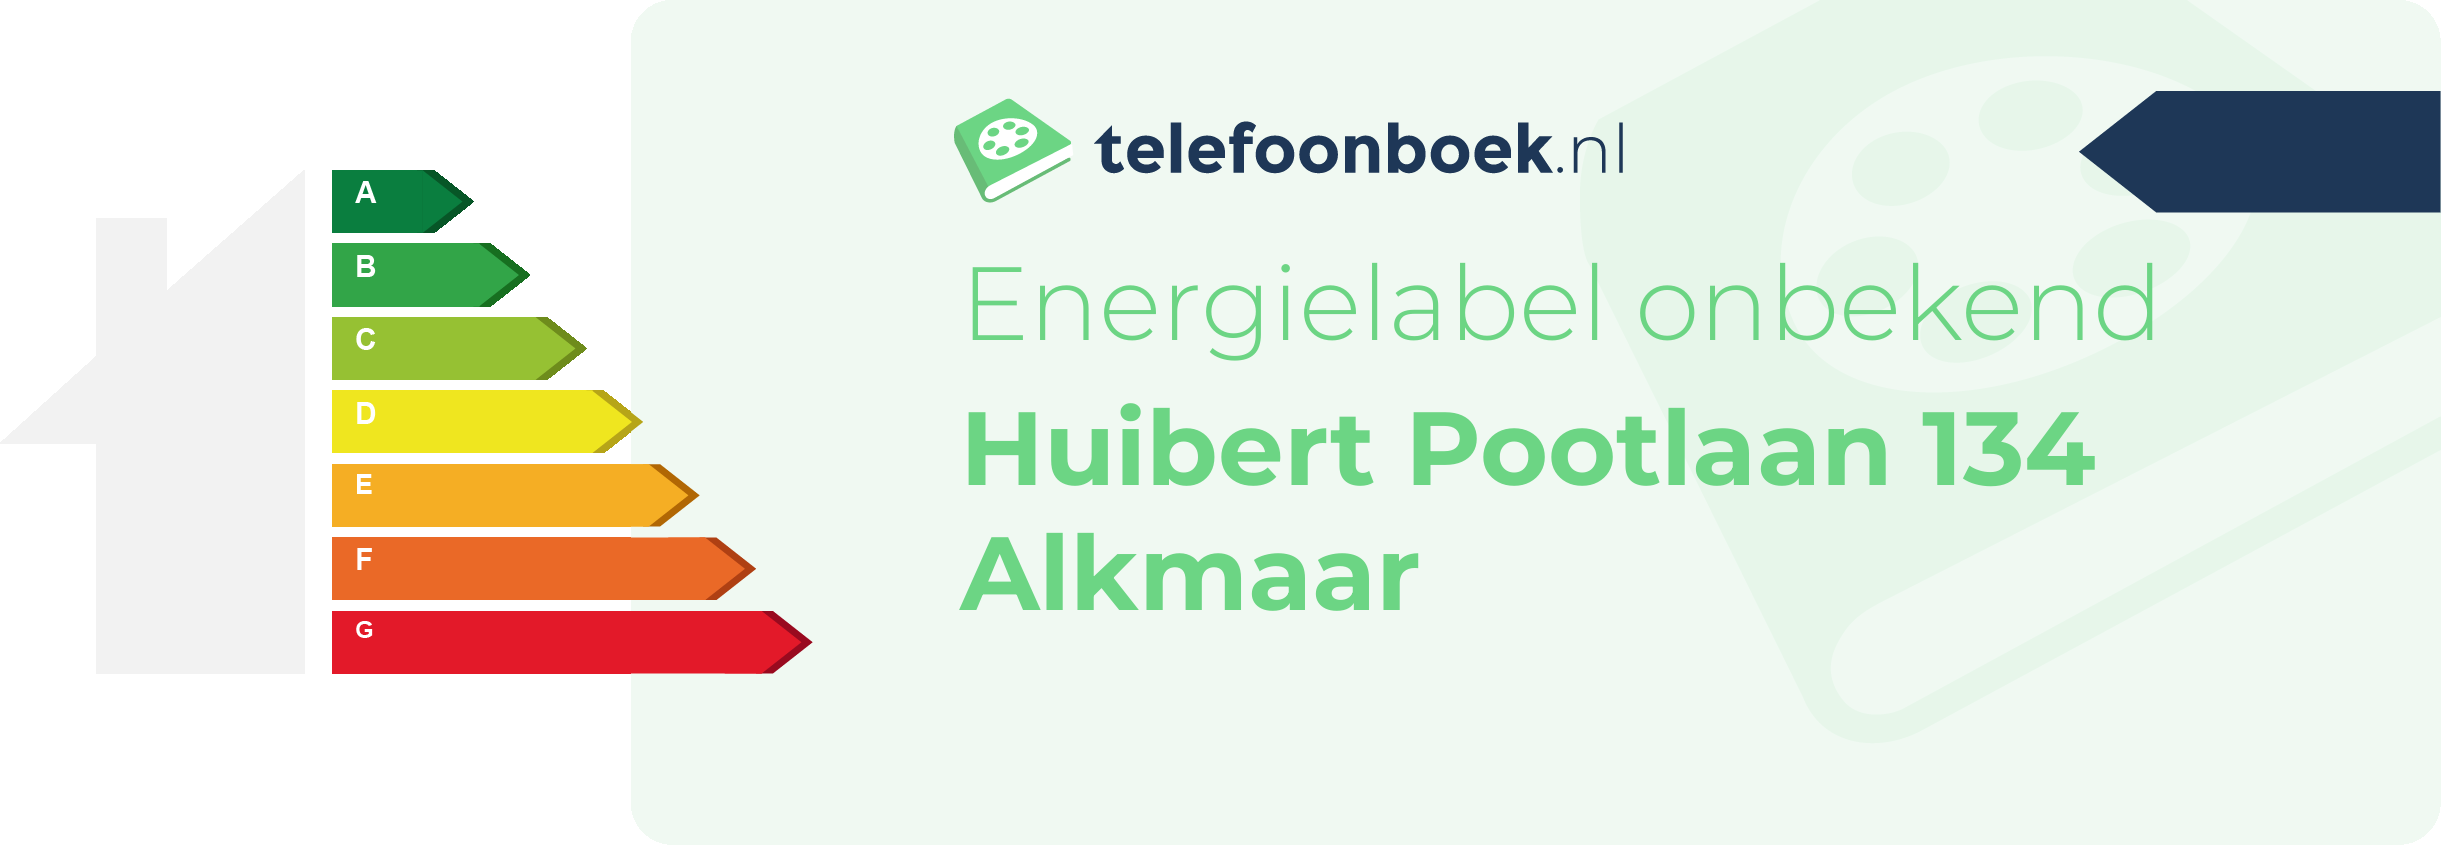 Energielabel Huibert Pootlaan 134 Alkmaar